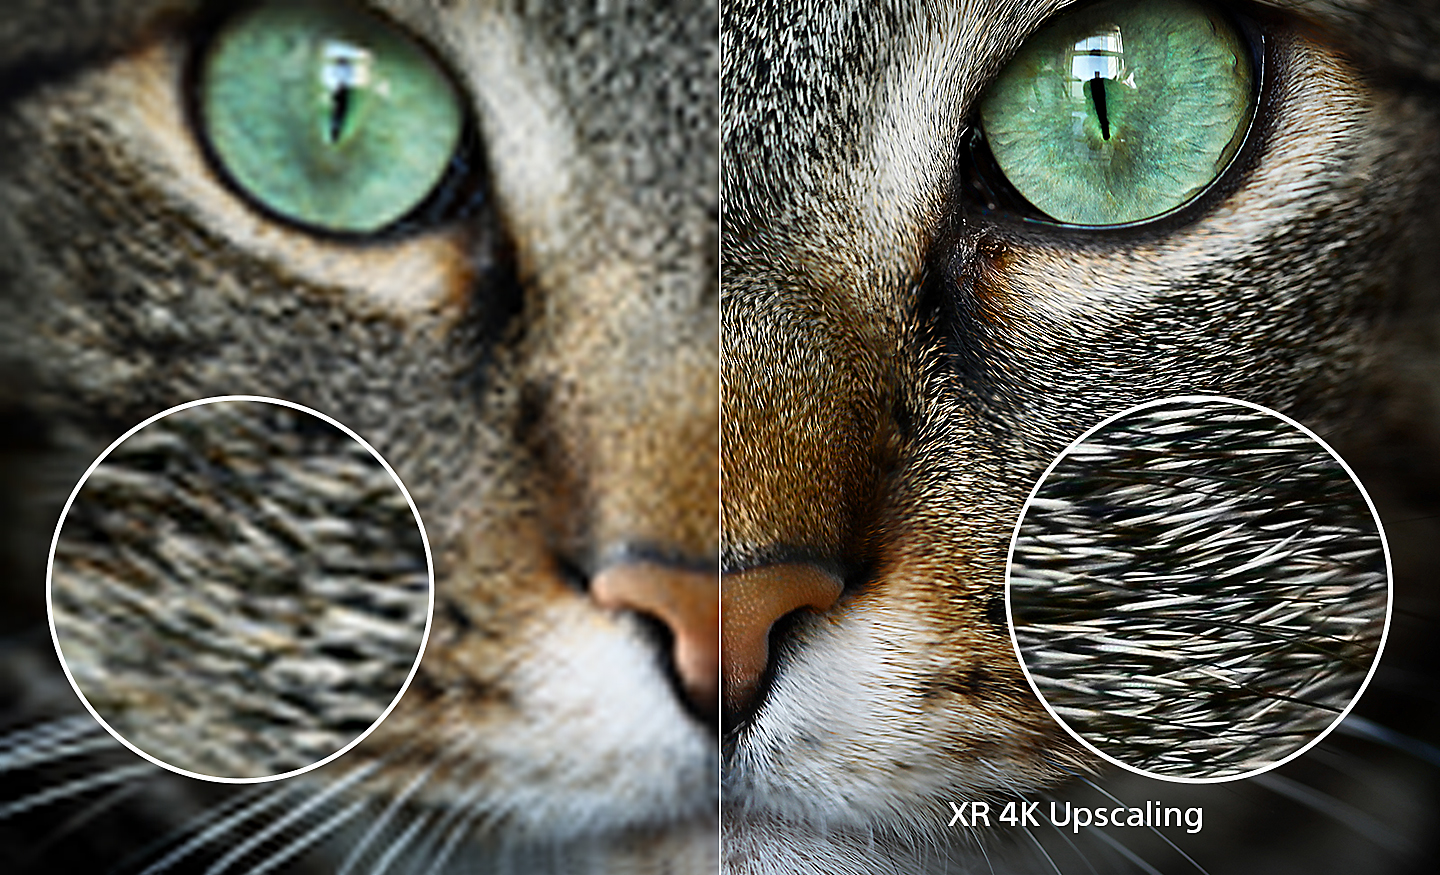 Immagine divisa della testa di un gatto con la parte destra che mostra una maggiore ricchezza di dettagli grazie alla tecnologia XR 4K Upscaling